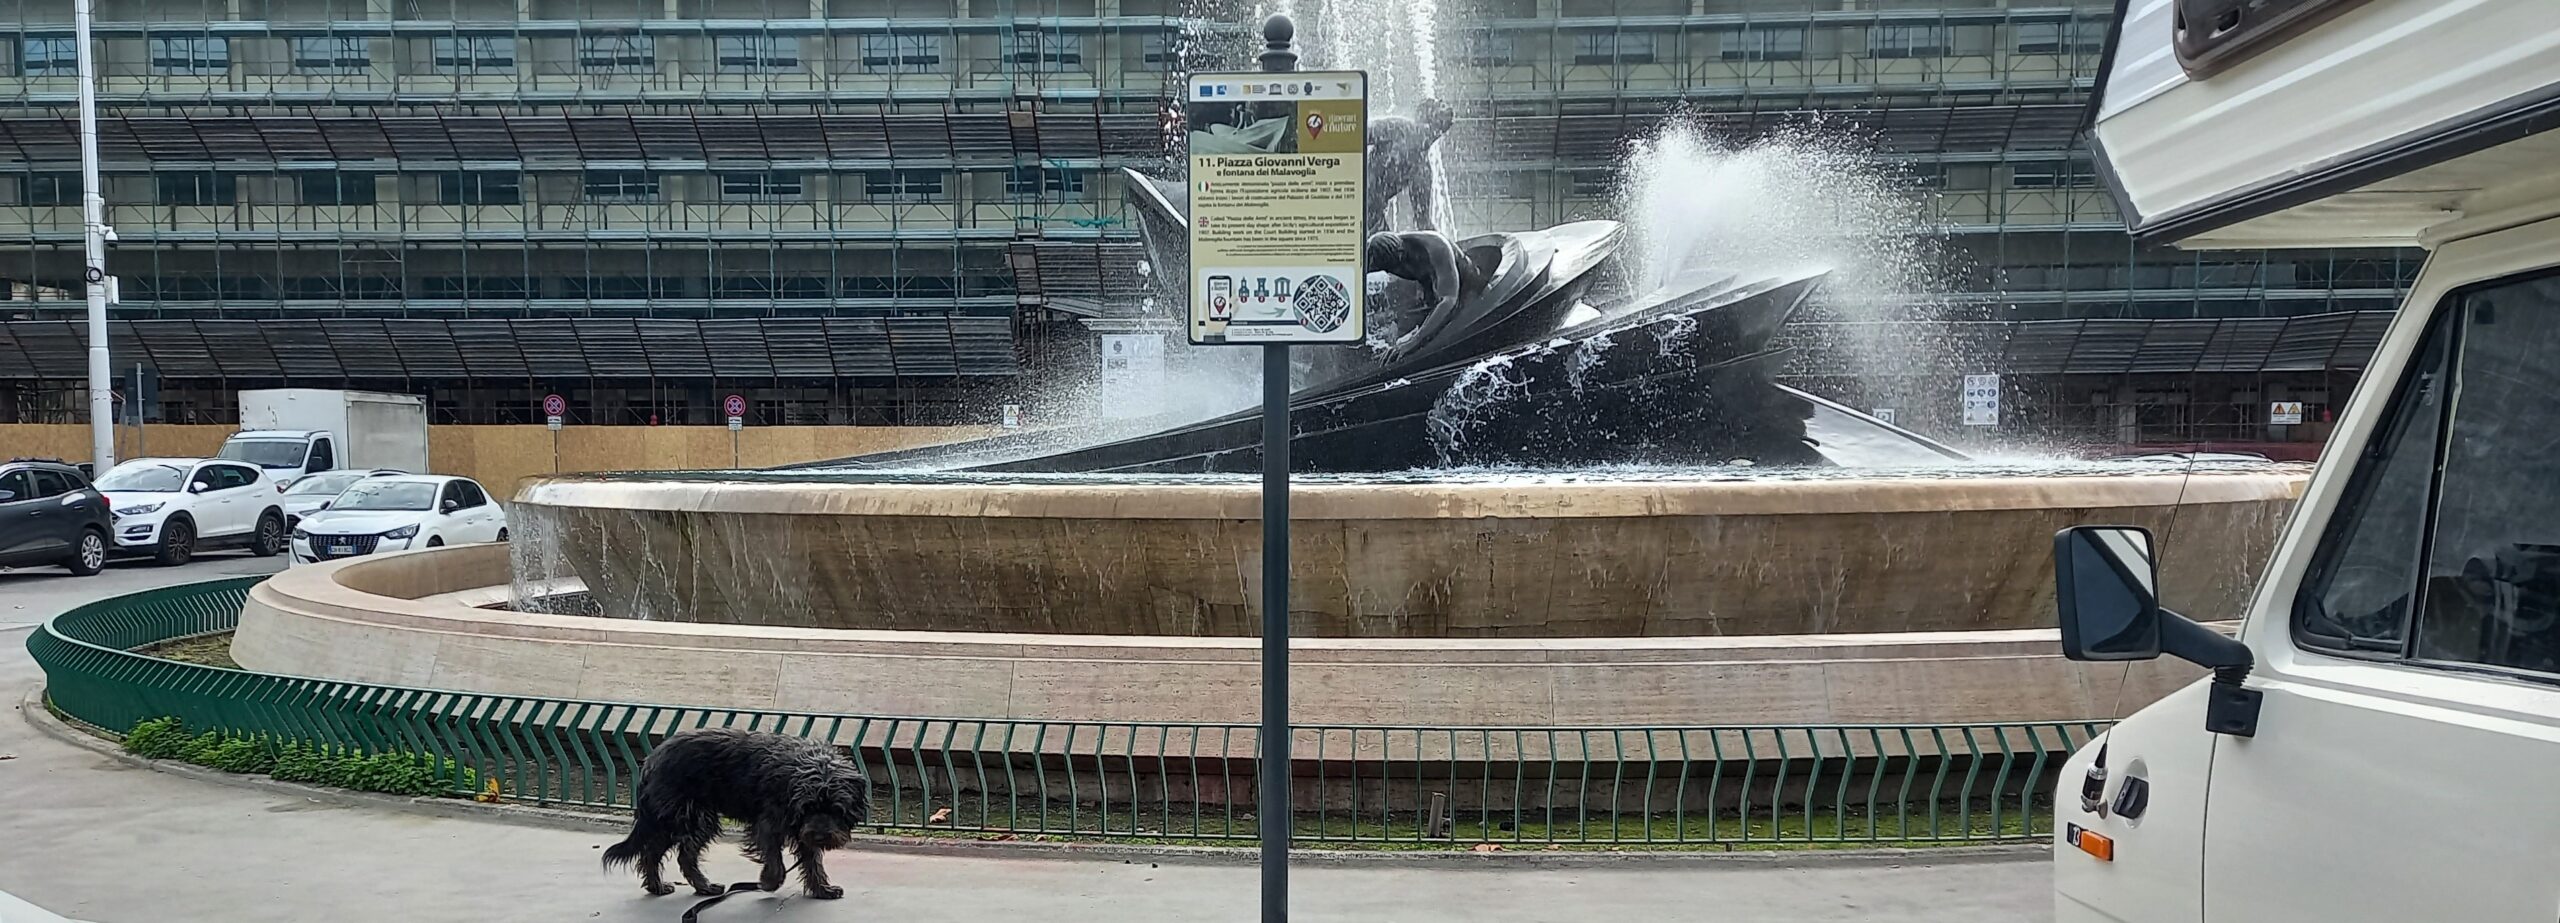 piazza giovanni verga fontana avvolta da un posteggio